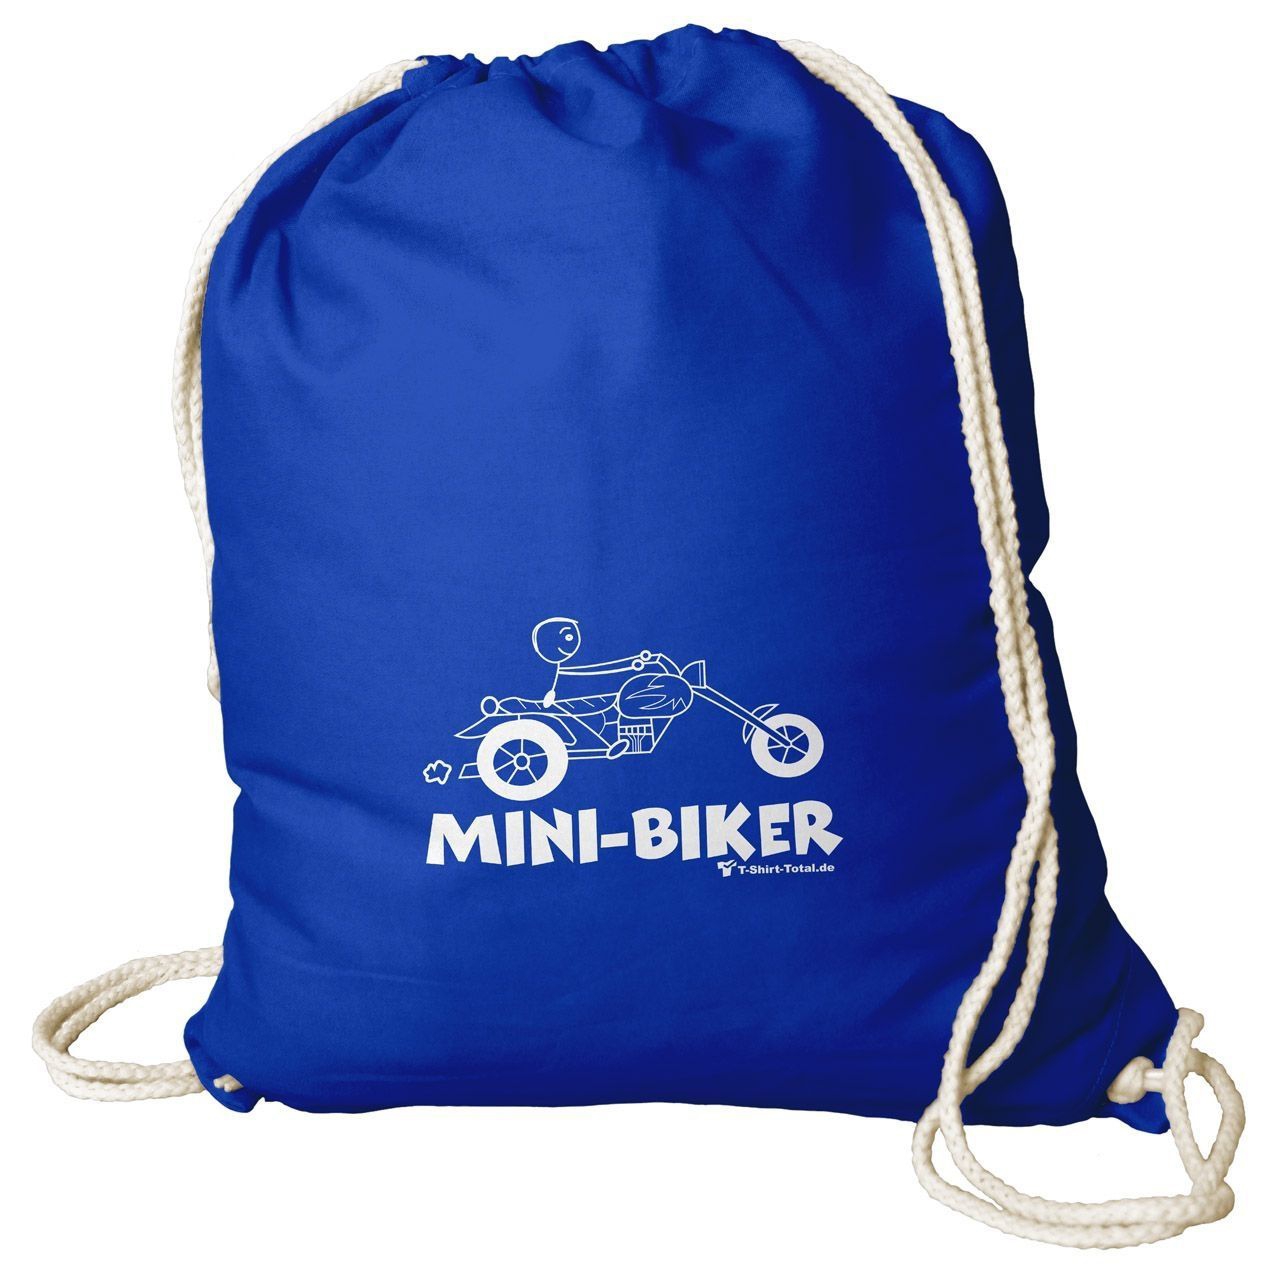 Mini Biker Rucksack Beutel royal